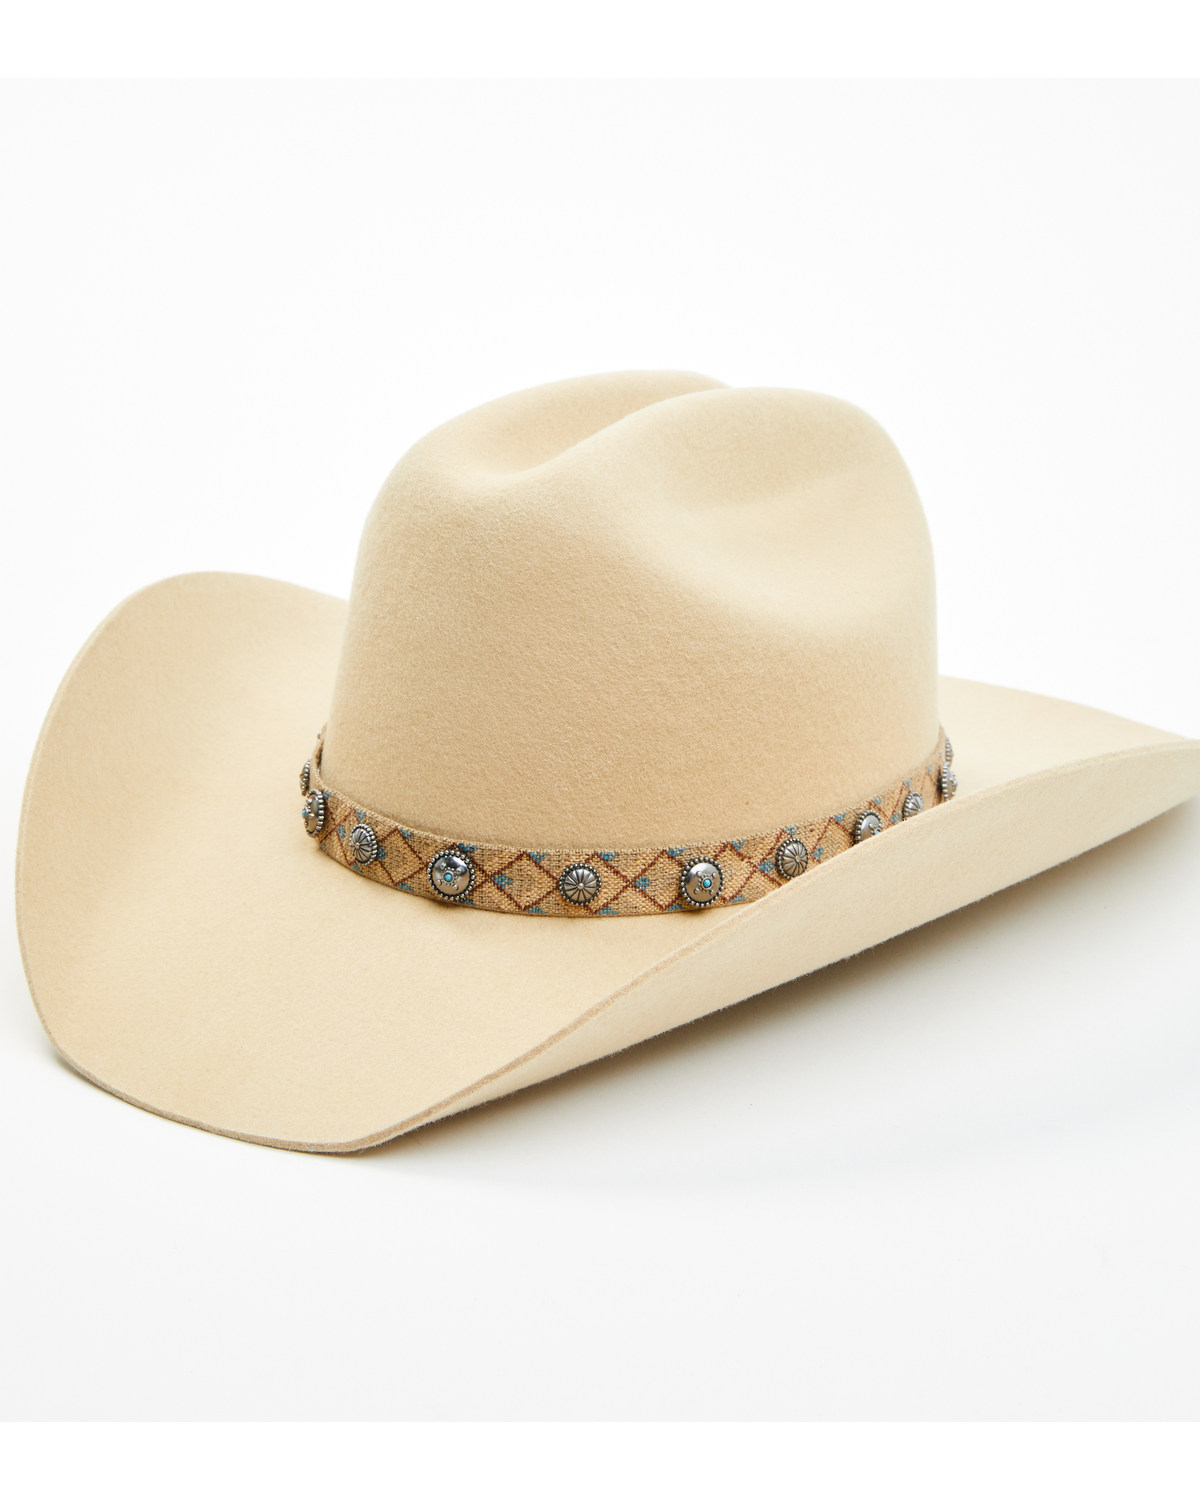 Idyllwind Women's Sarasota Felt Cowboy Hat